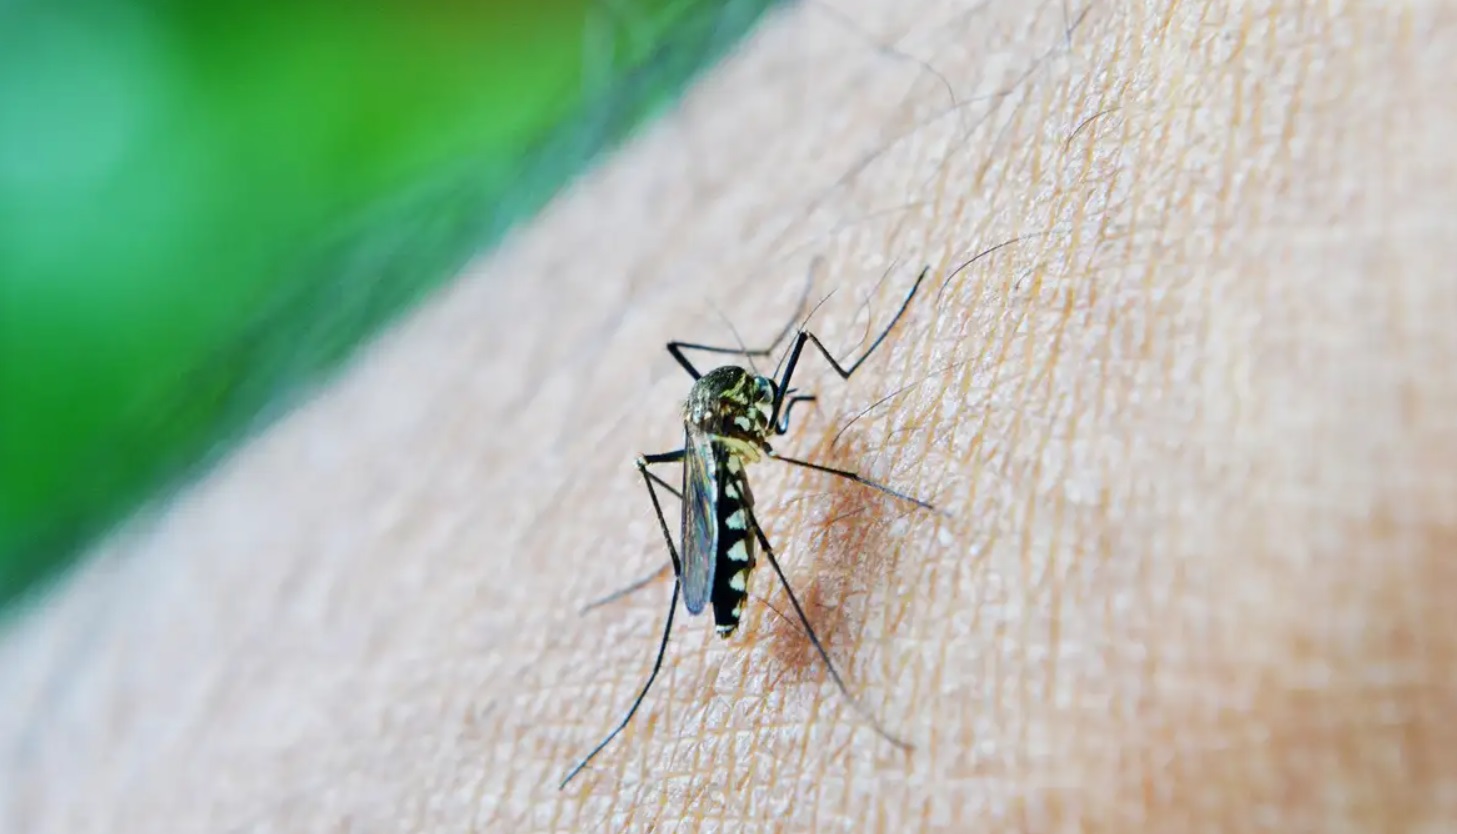 Natal recebeu do Ministério da Saúde mais de 18,8 mil doses da vacina contra a dengue (Foto: nuzeee / Pixabay)